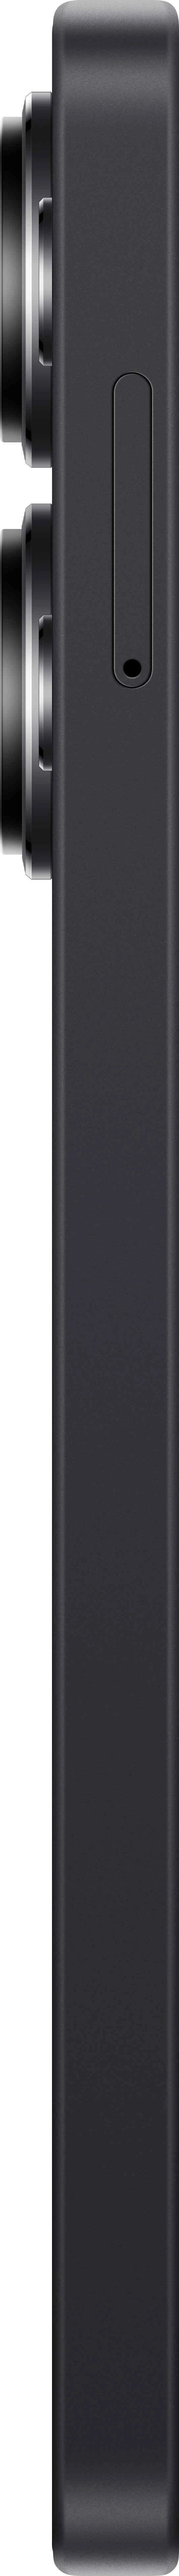 Redmi Note 13 Pro 8/256GB black